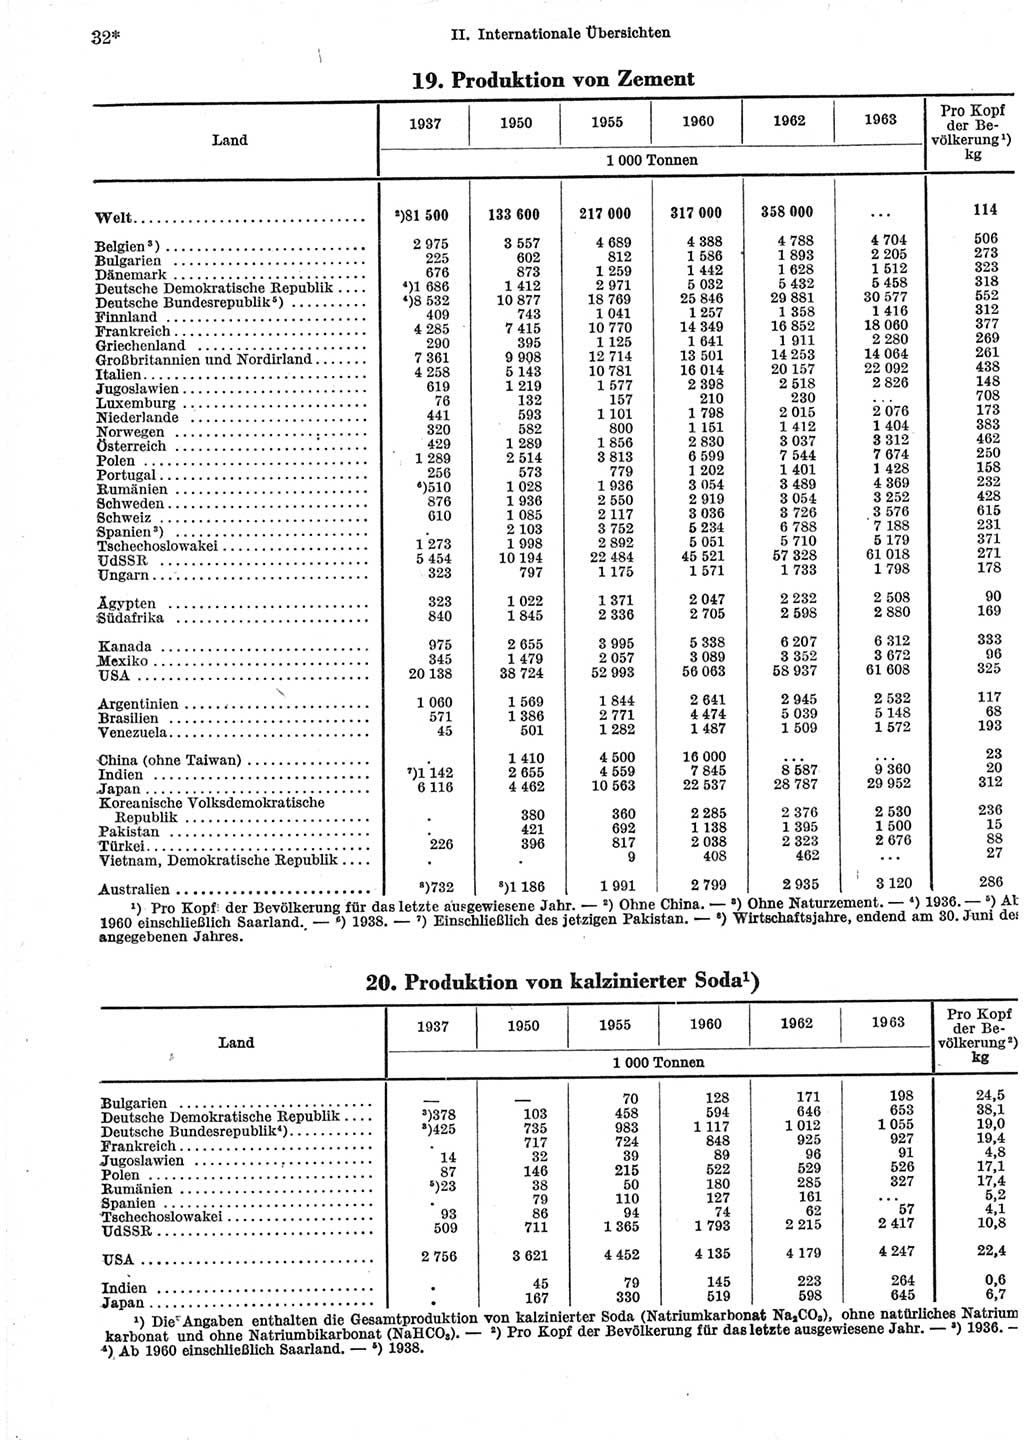 Statistisches Jahrbuch der Deutschen Demokratischen Republik (DDR) 1965, Seite 32 (Stat. Jb. DDR 1965, S. 32)